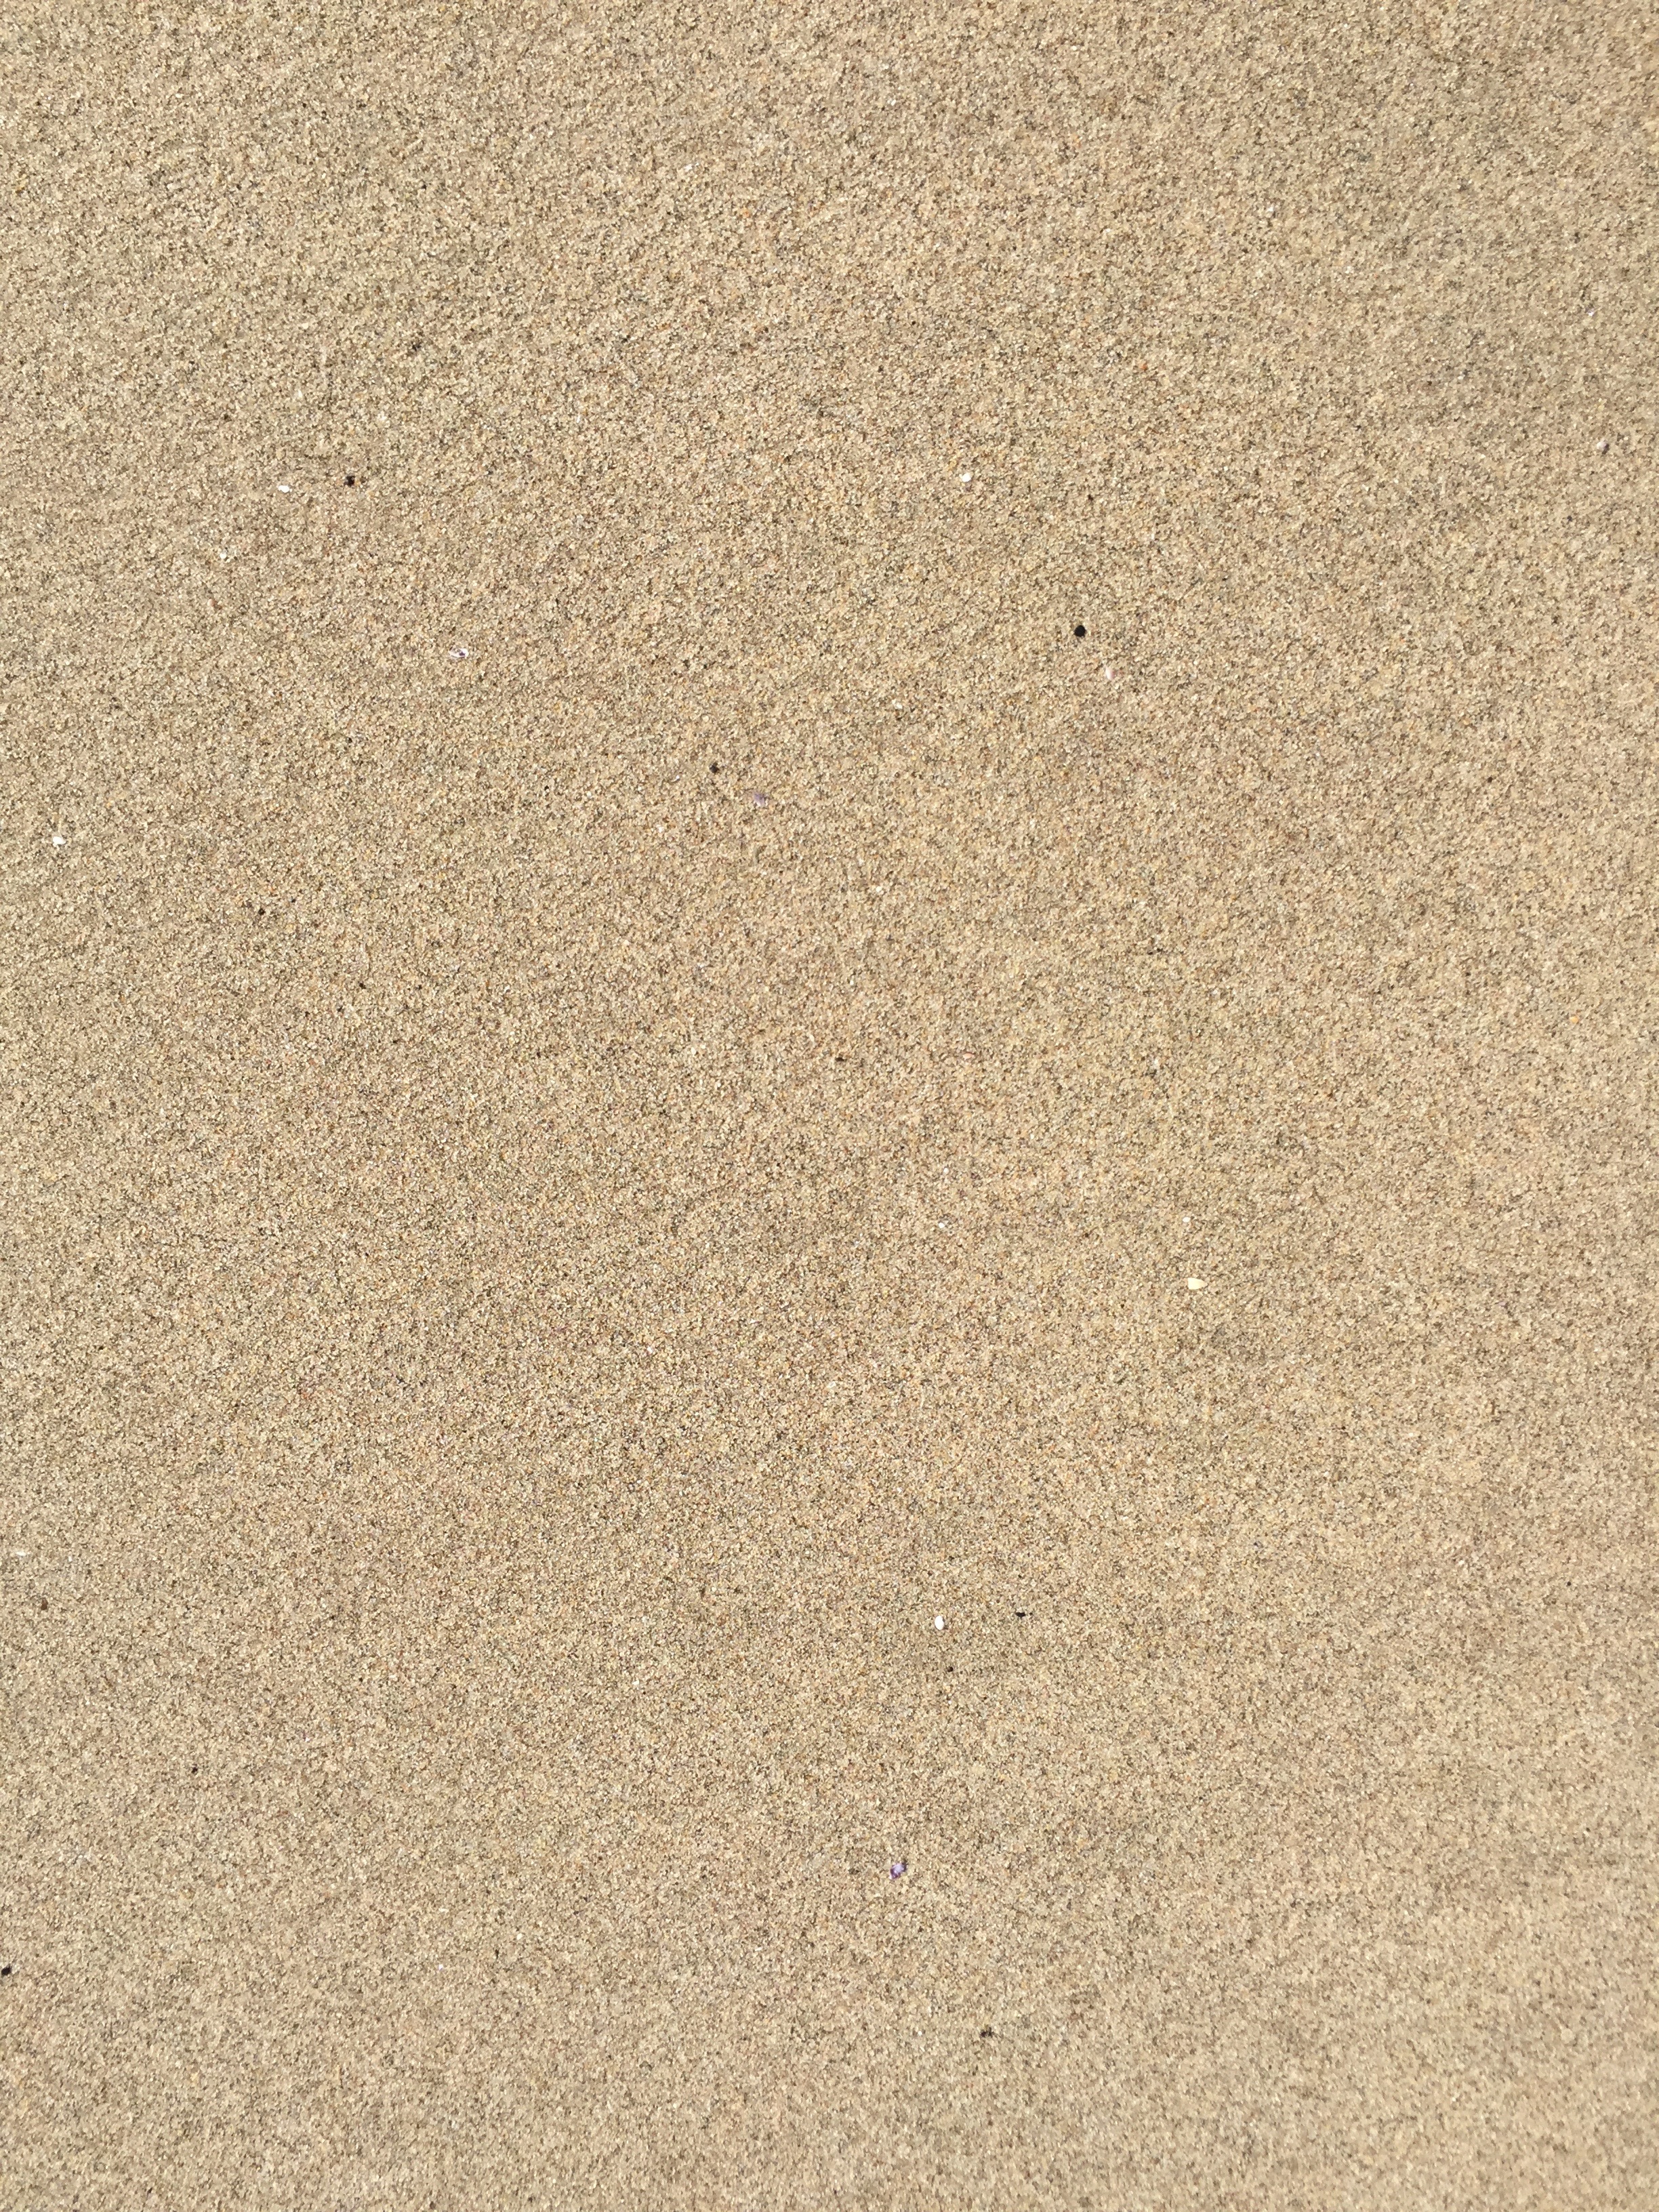 Текстура песка бесшовная4